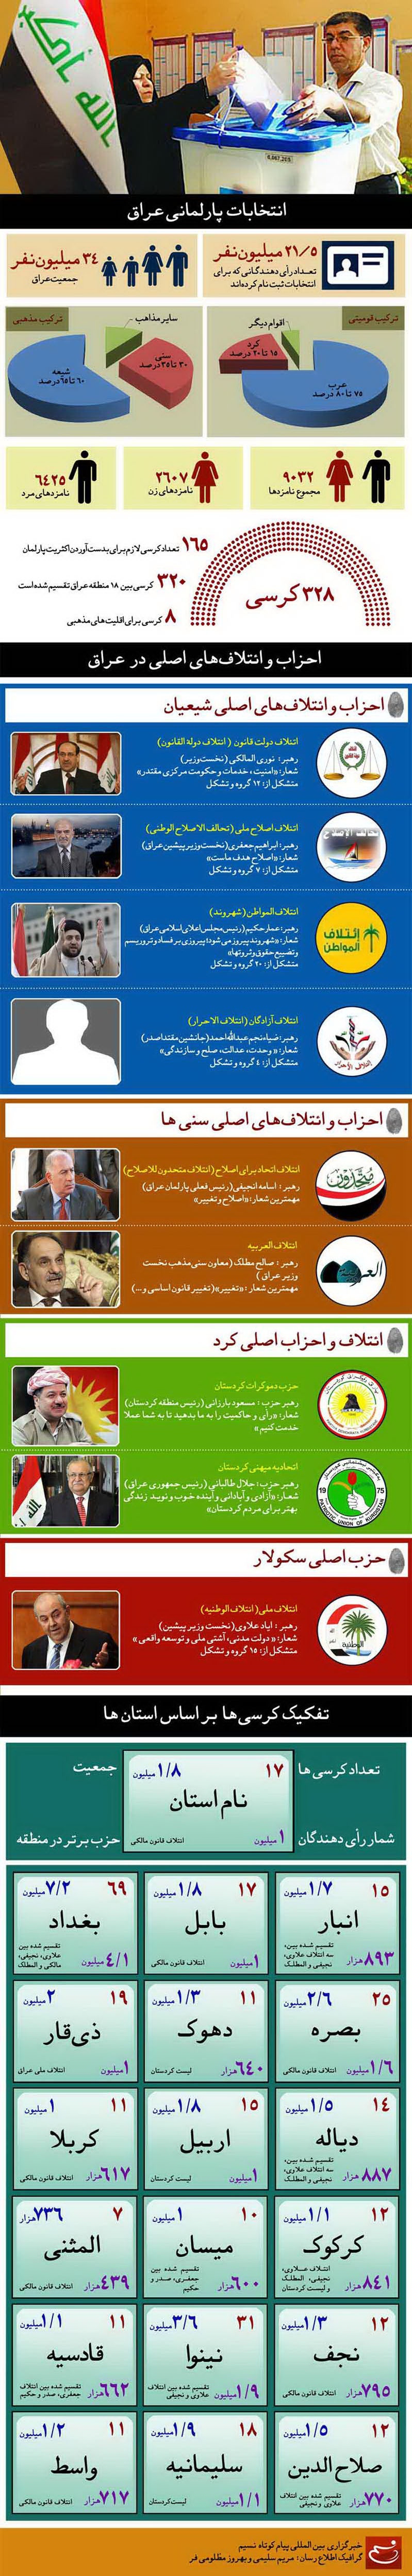 آنچه لازم است از انتخابات عراق بدانید